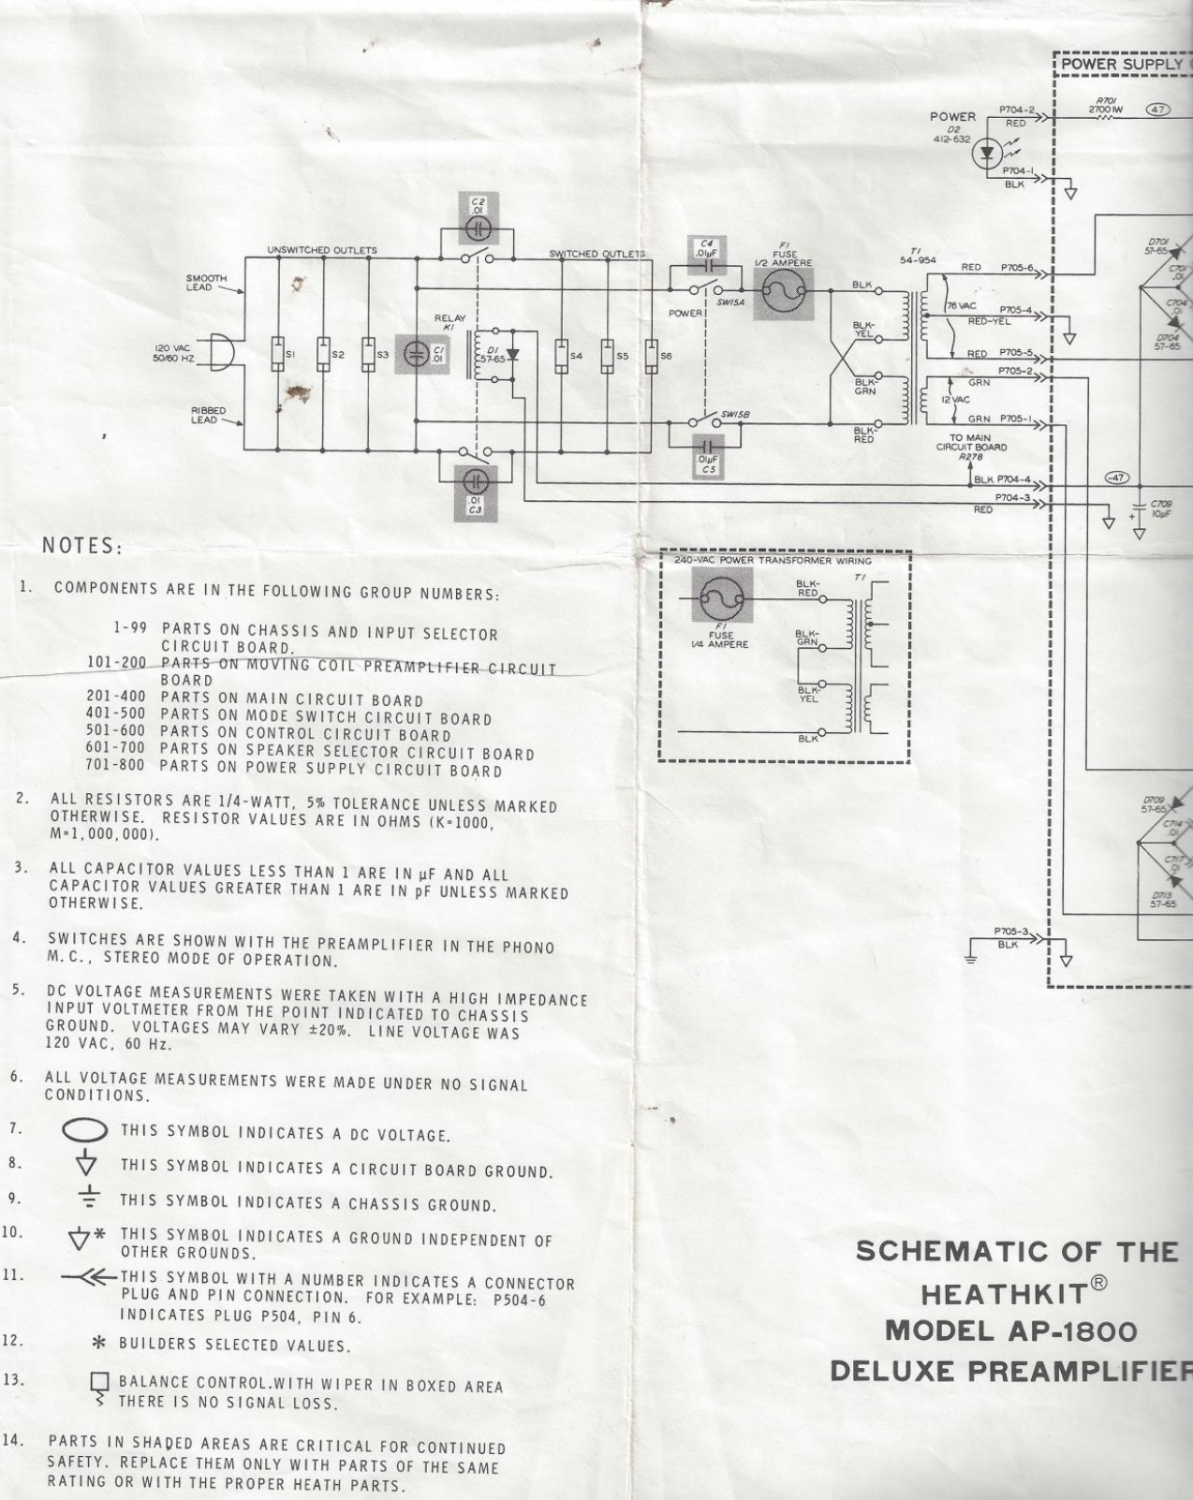 Heathkit AP-1800 Deluxe PreAmplifier - Schematic Diagrams